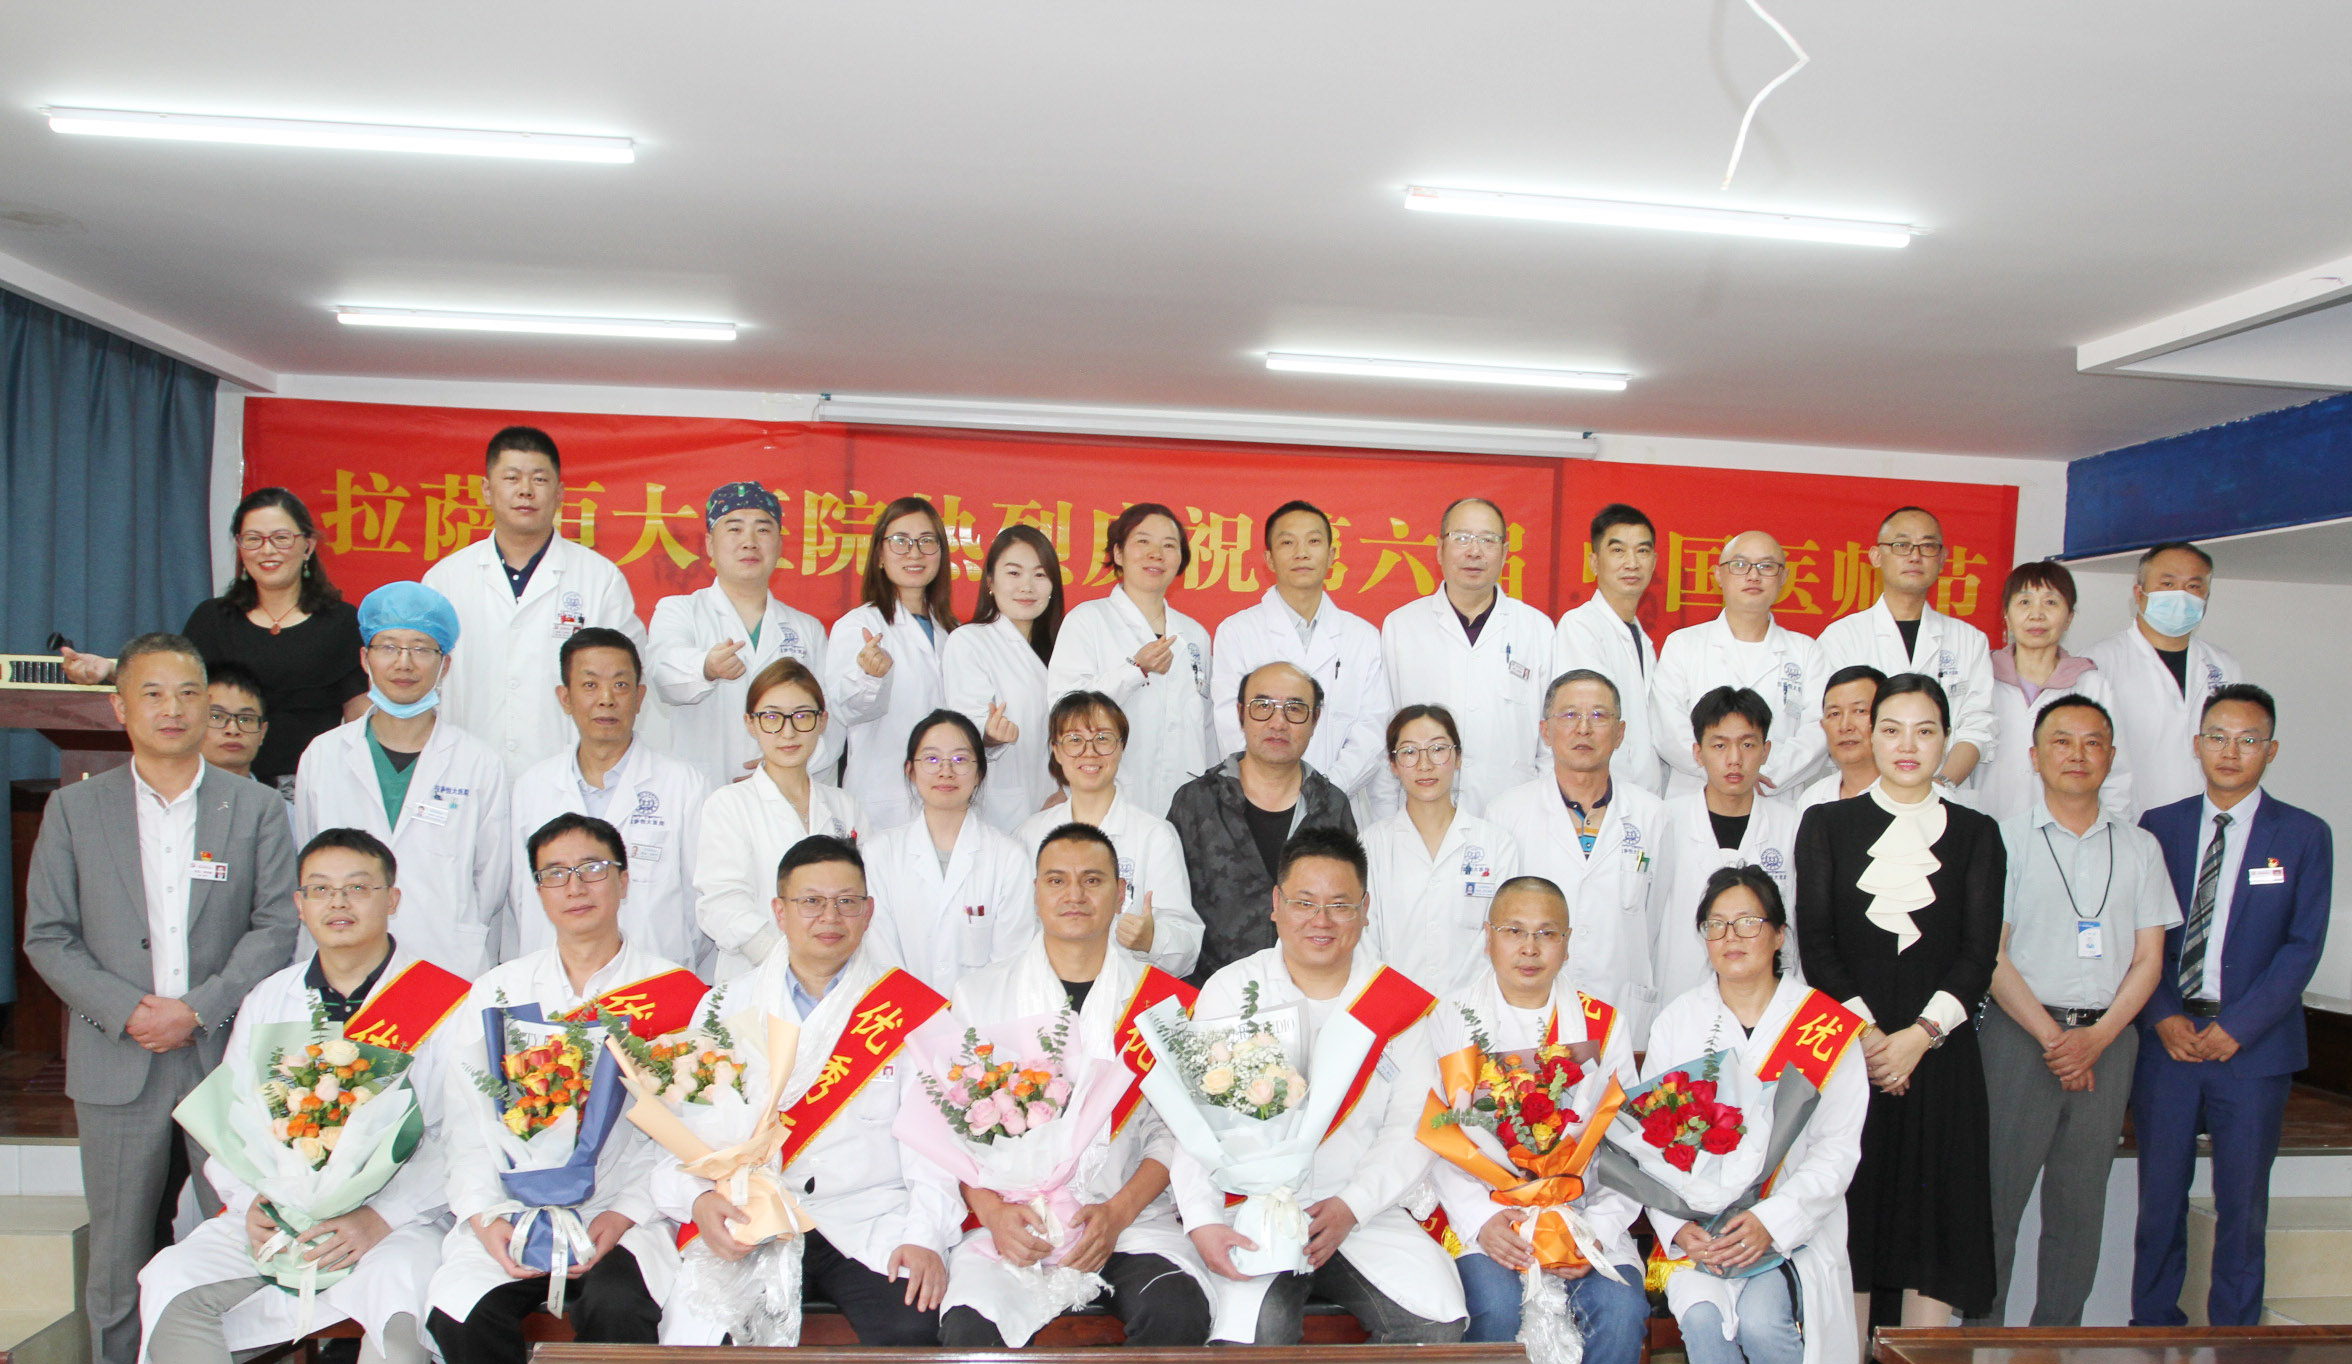 拉萨恒大医院庆祝第六届中国医师节活动